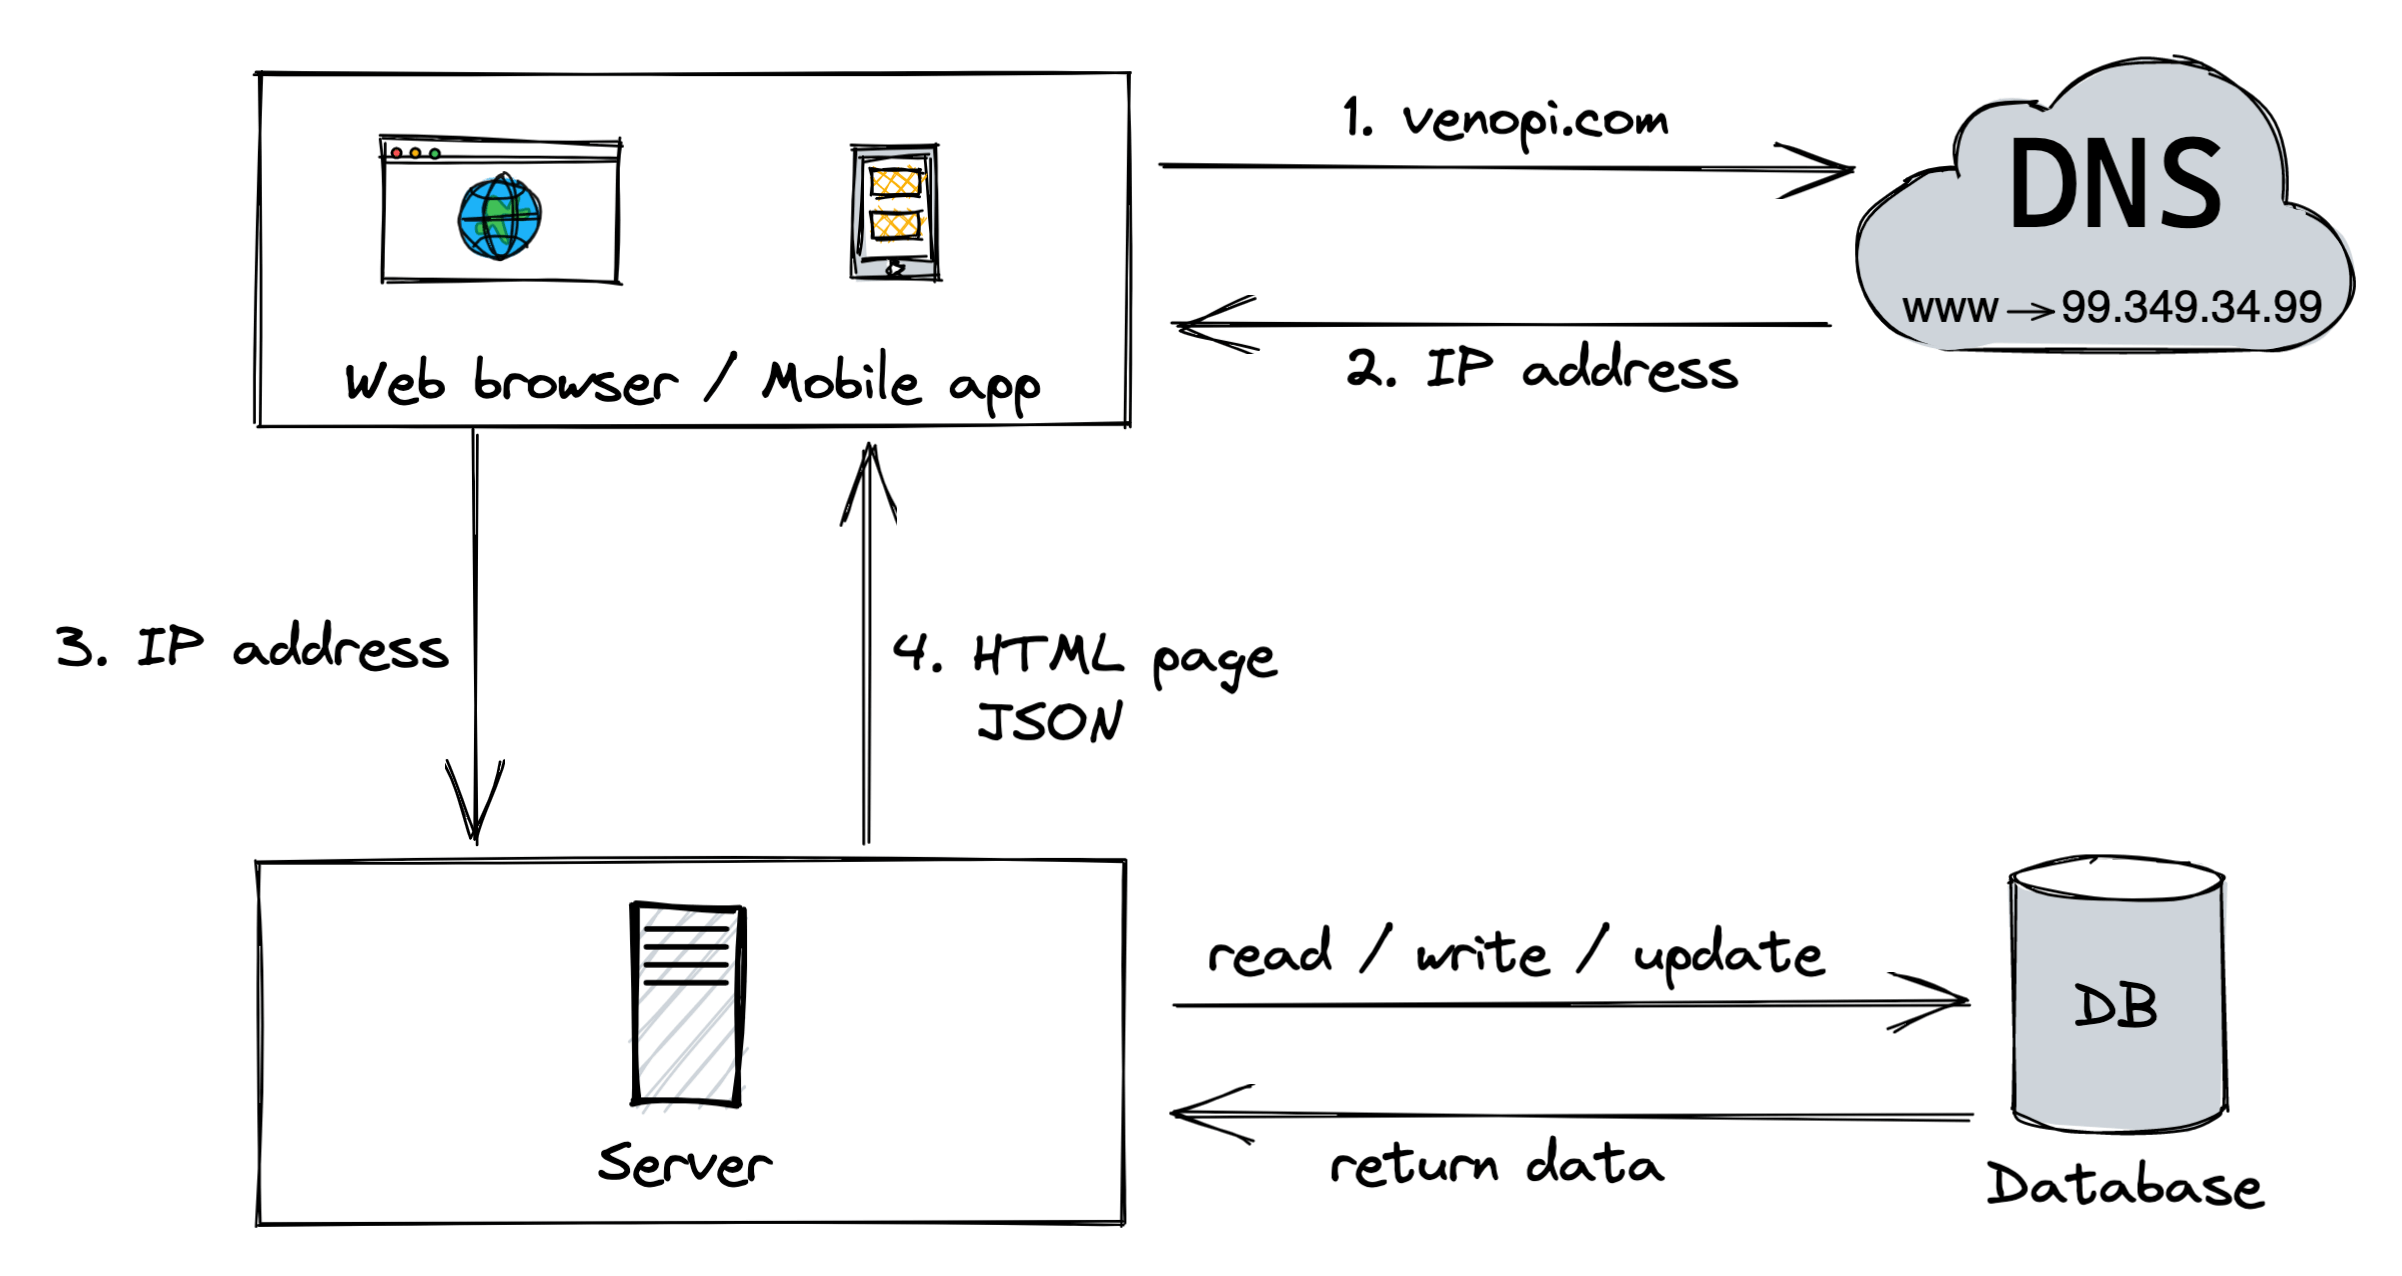 Multiple server: Database